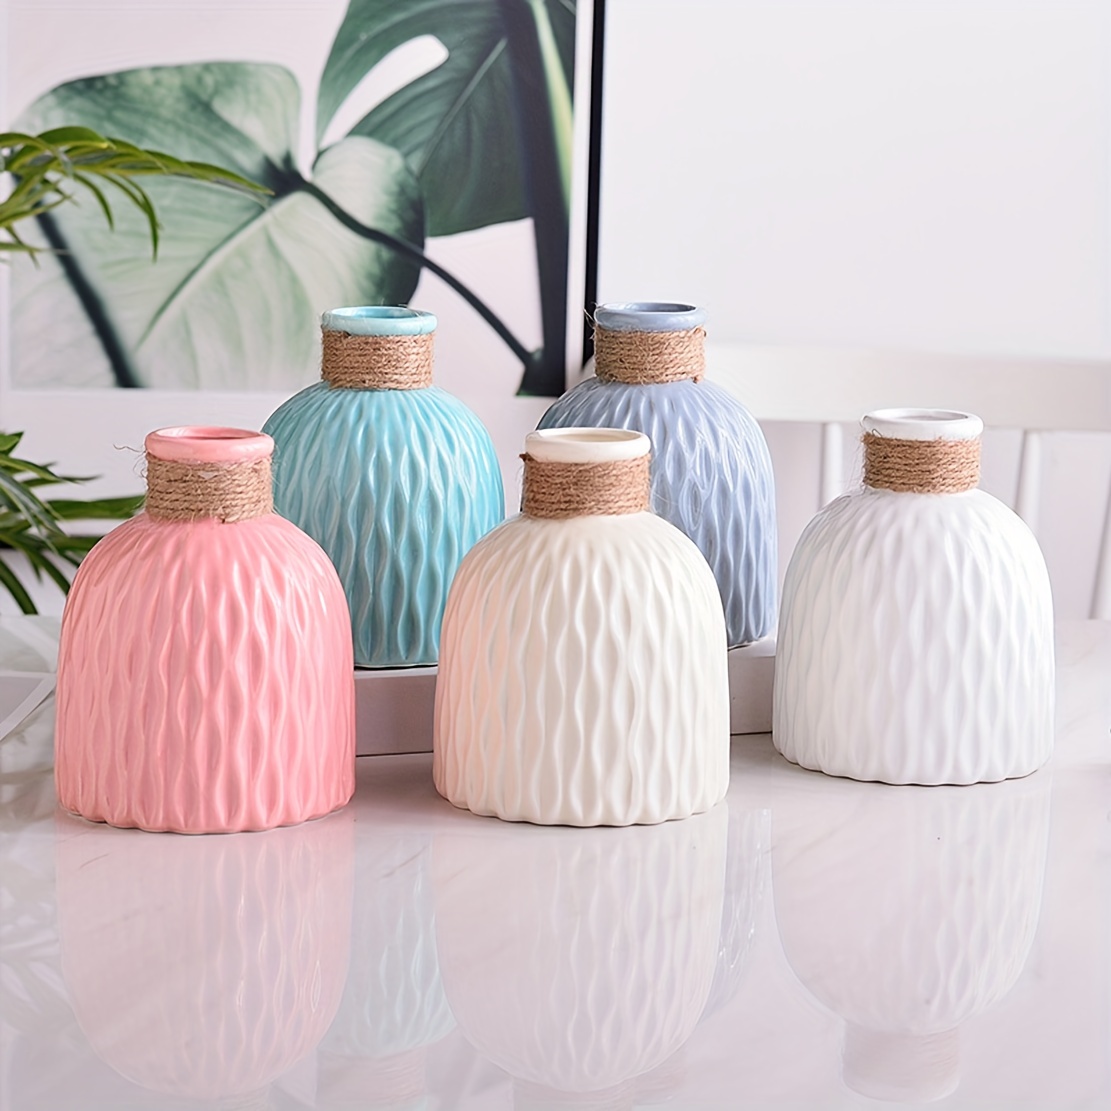 White Textured Ceramic Vases